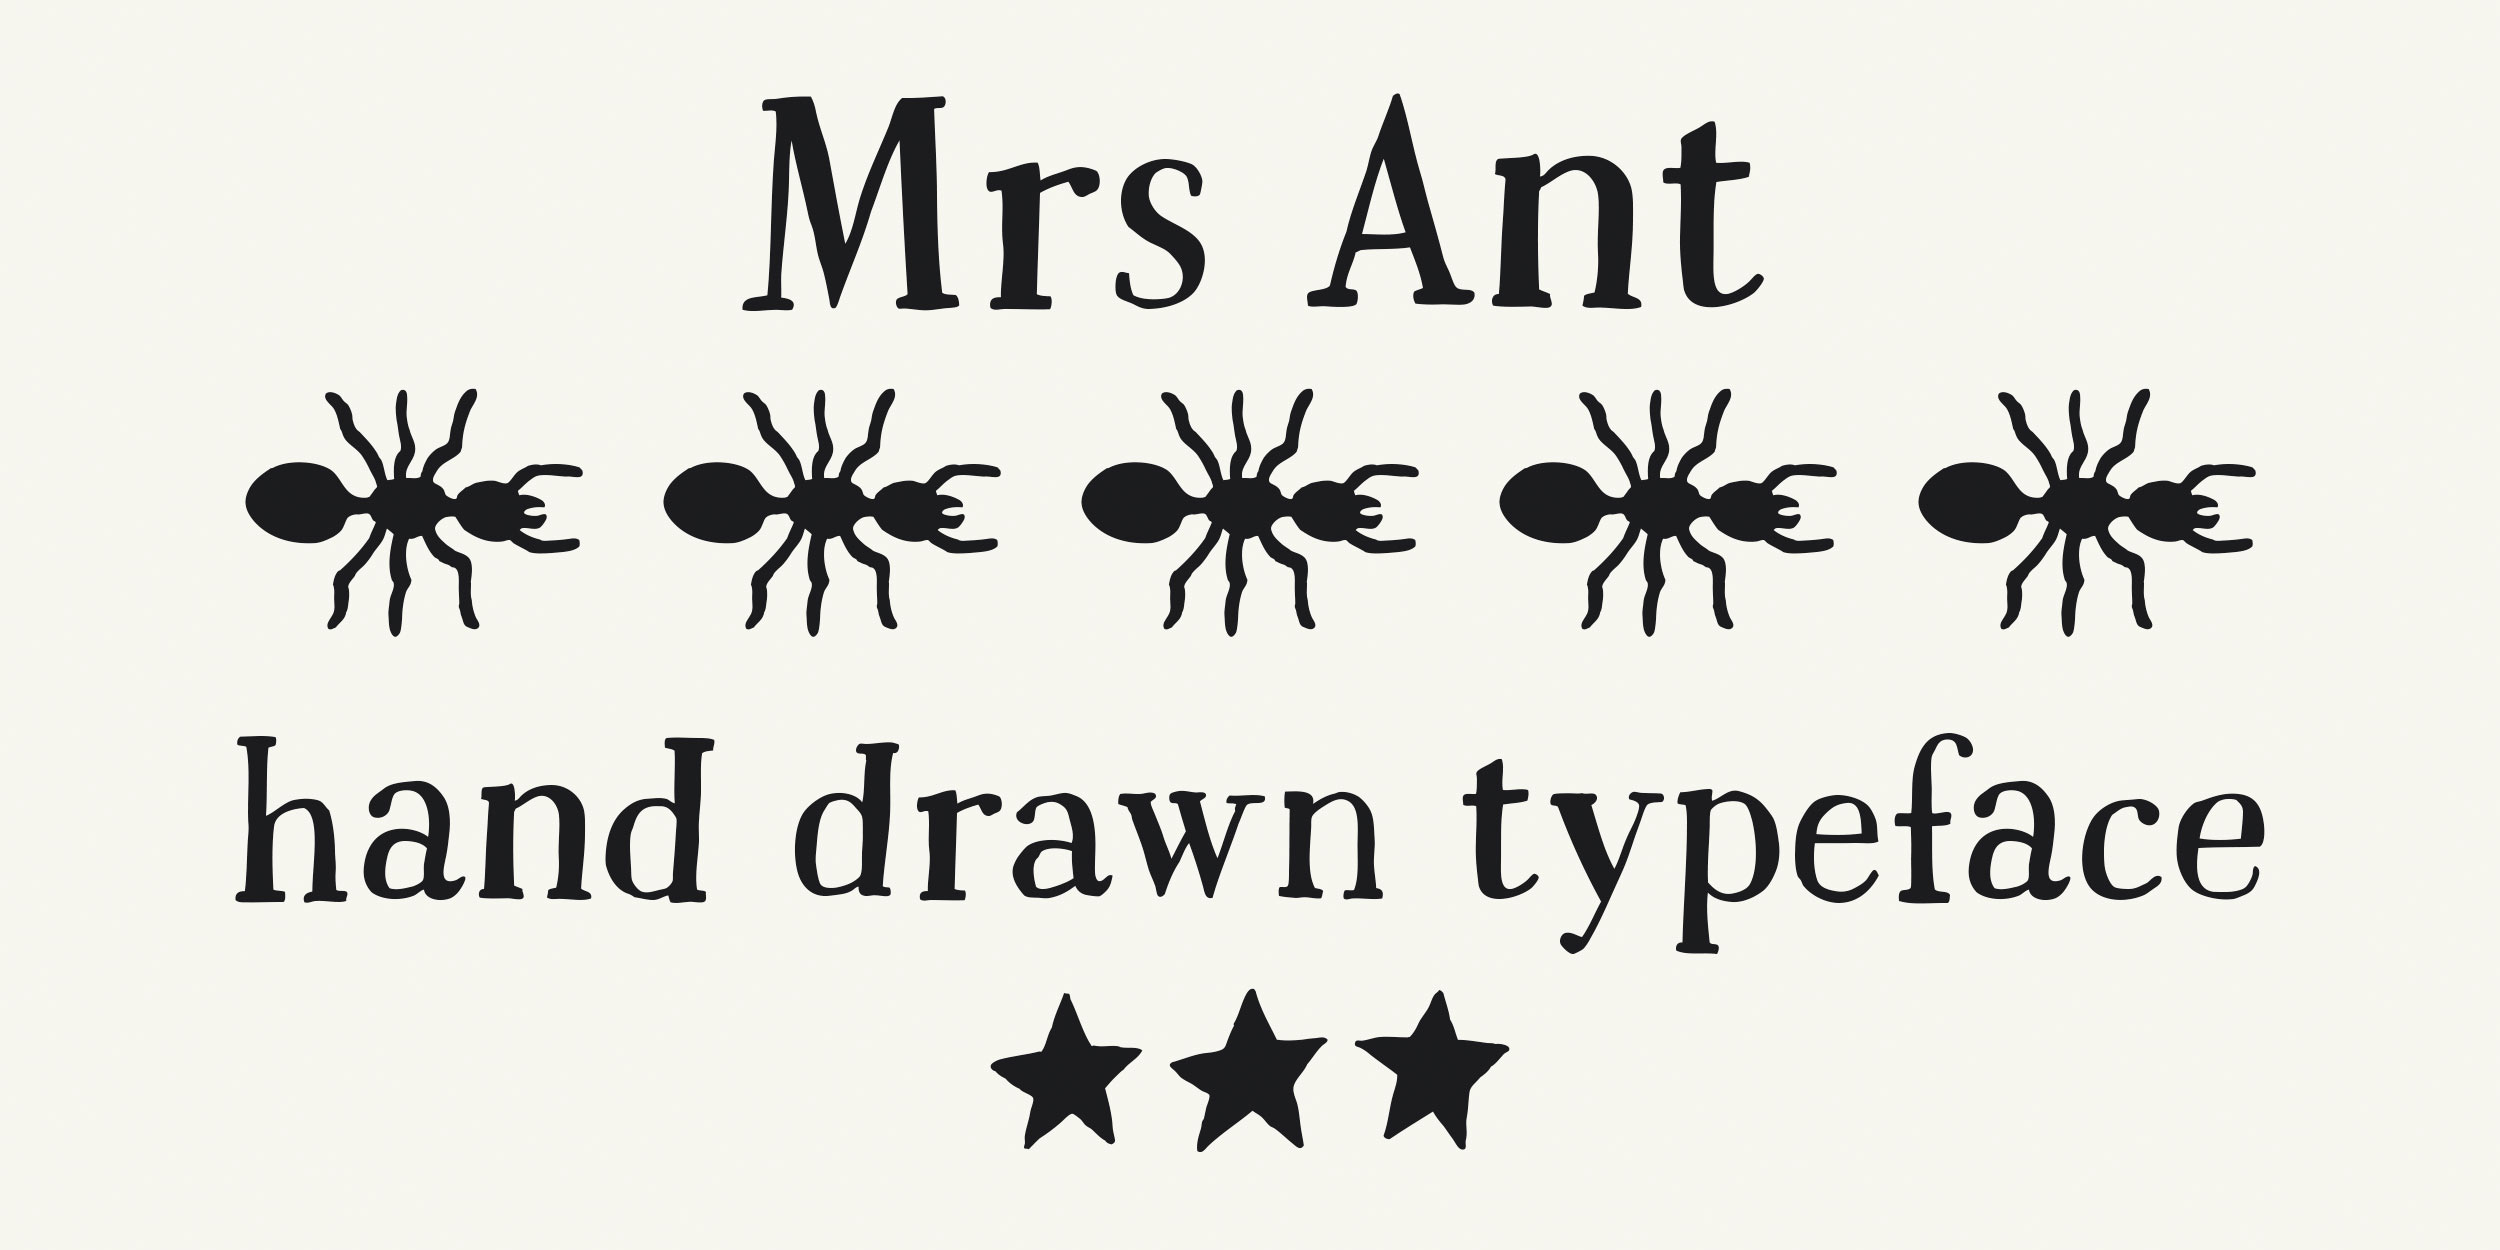 Mrs-Ant-1.jpg